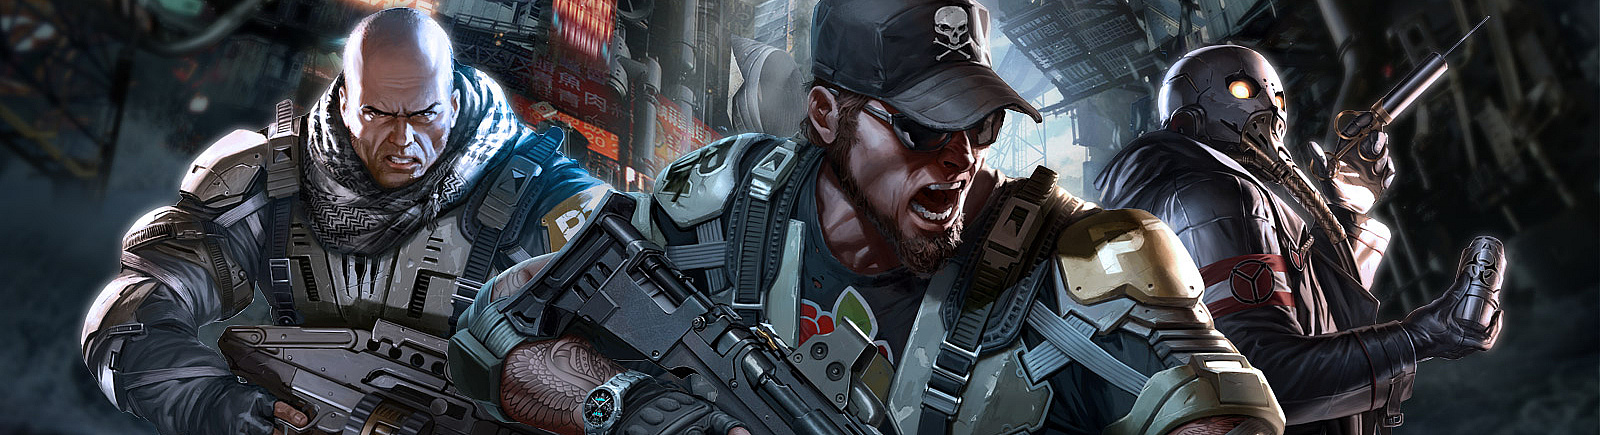 Дата выхода Killzone: Mercenary  на PS Vita в России и во всем мире